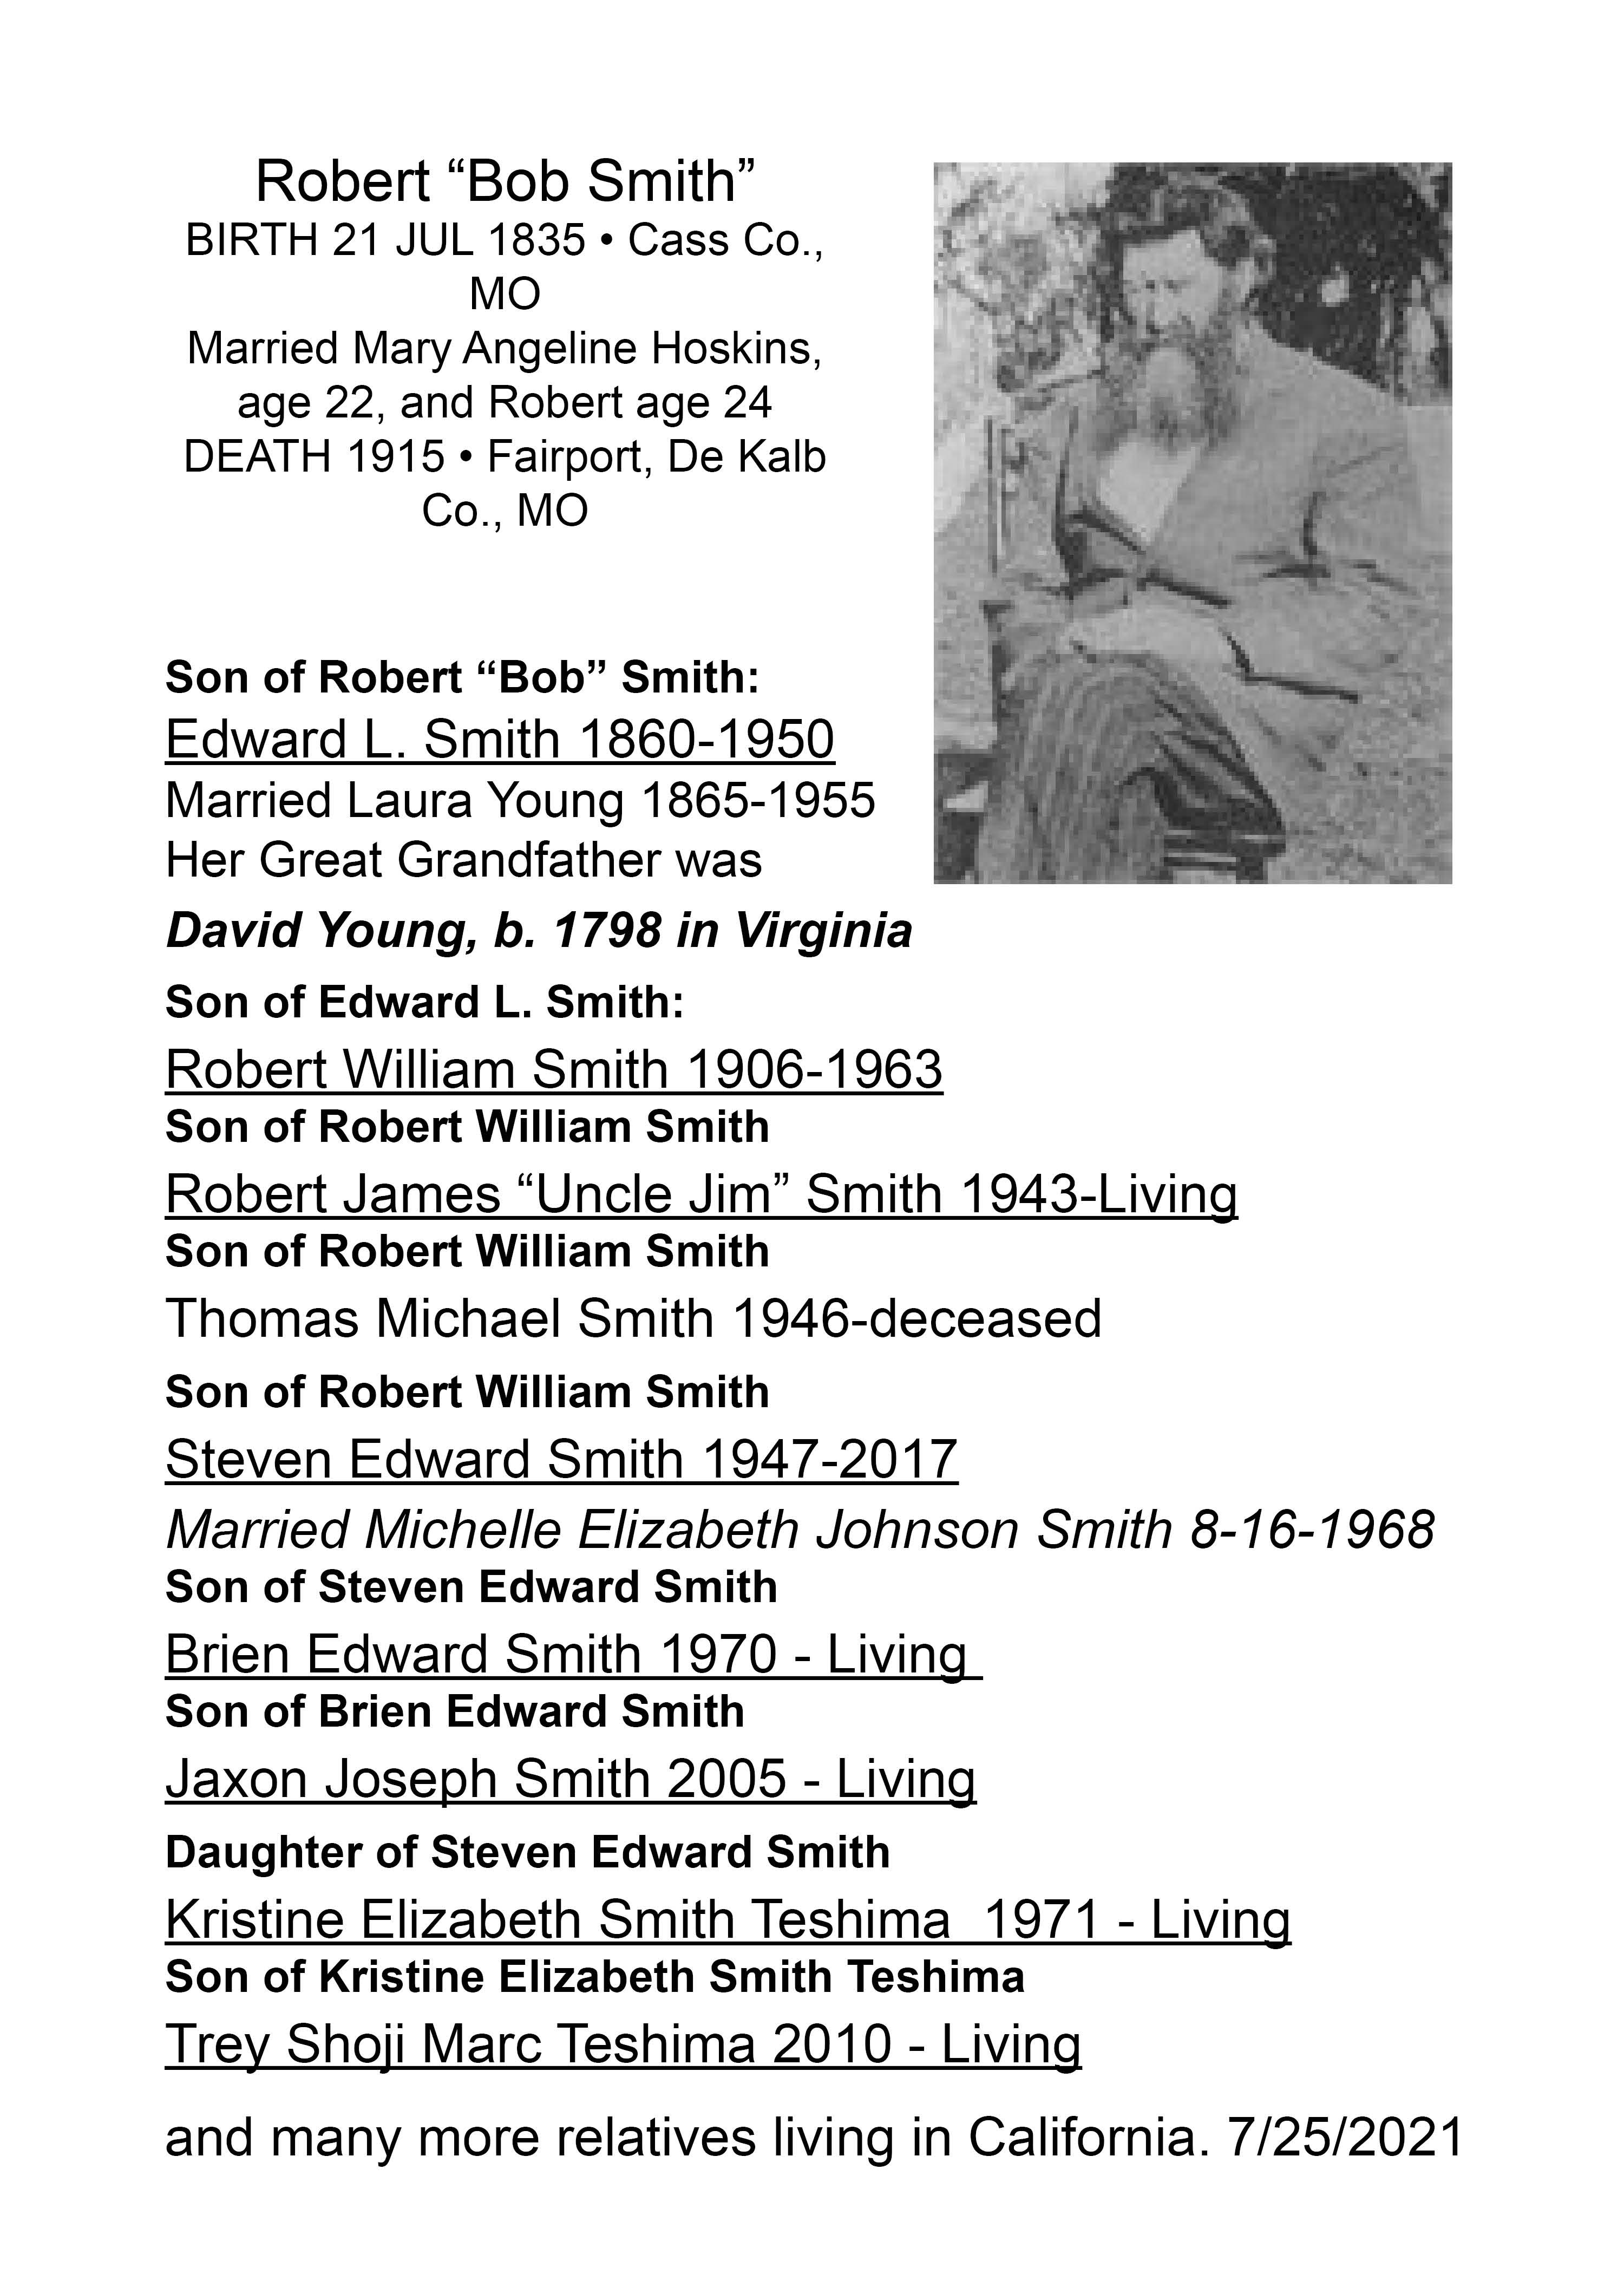 Robert “Bob Smith”  b.1835 Cass Co., MO d. 1915 Fairport, De Kalb Co., MO